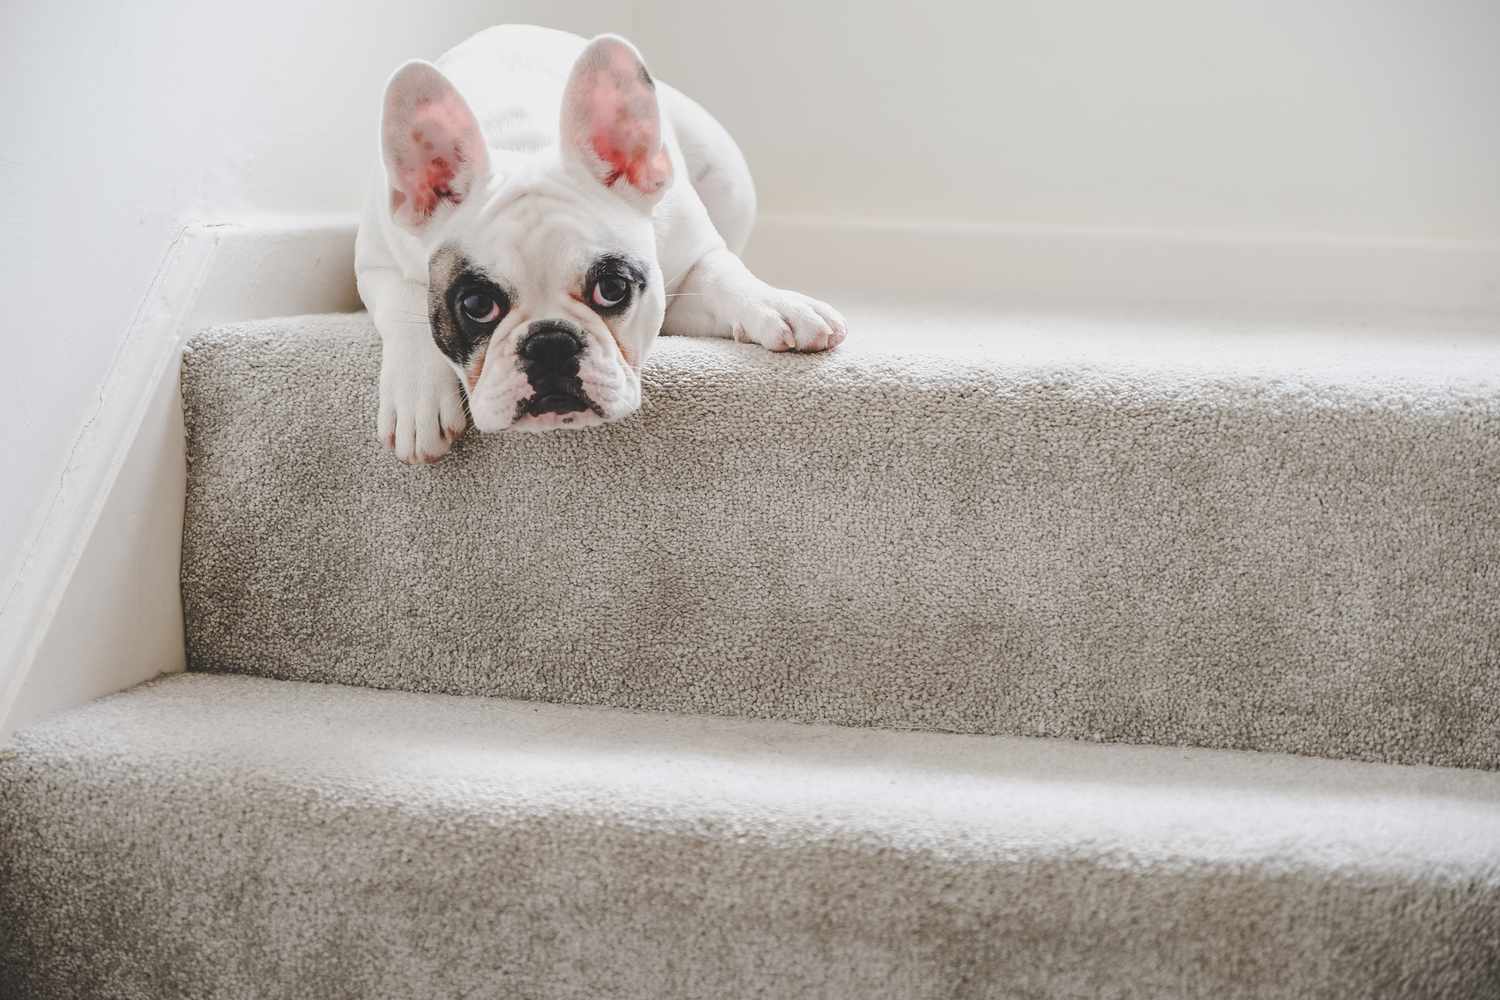 Cachorro de Bulldog francés descansando en el rellano de la escalera, Inglaterra